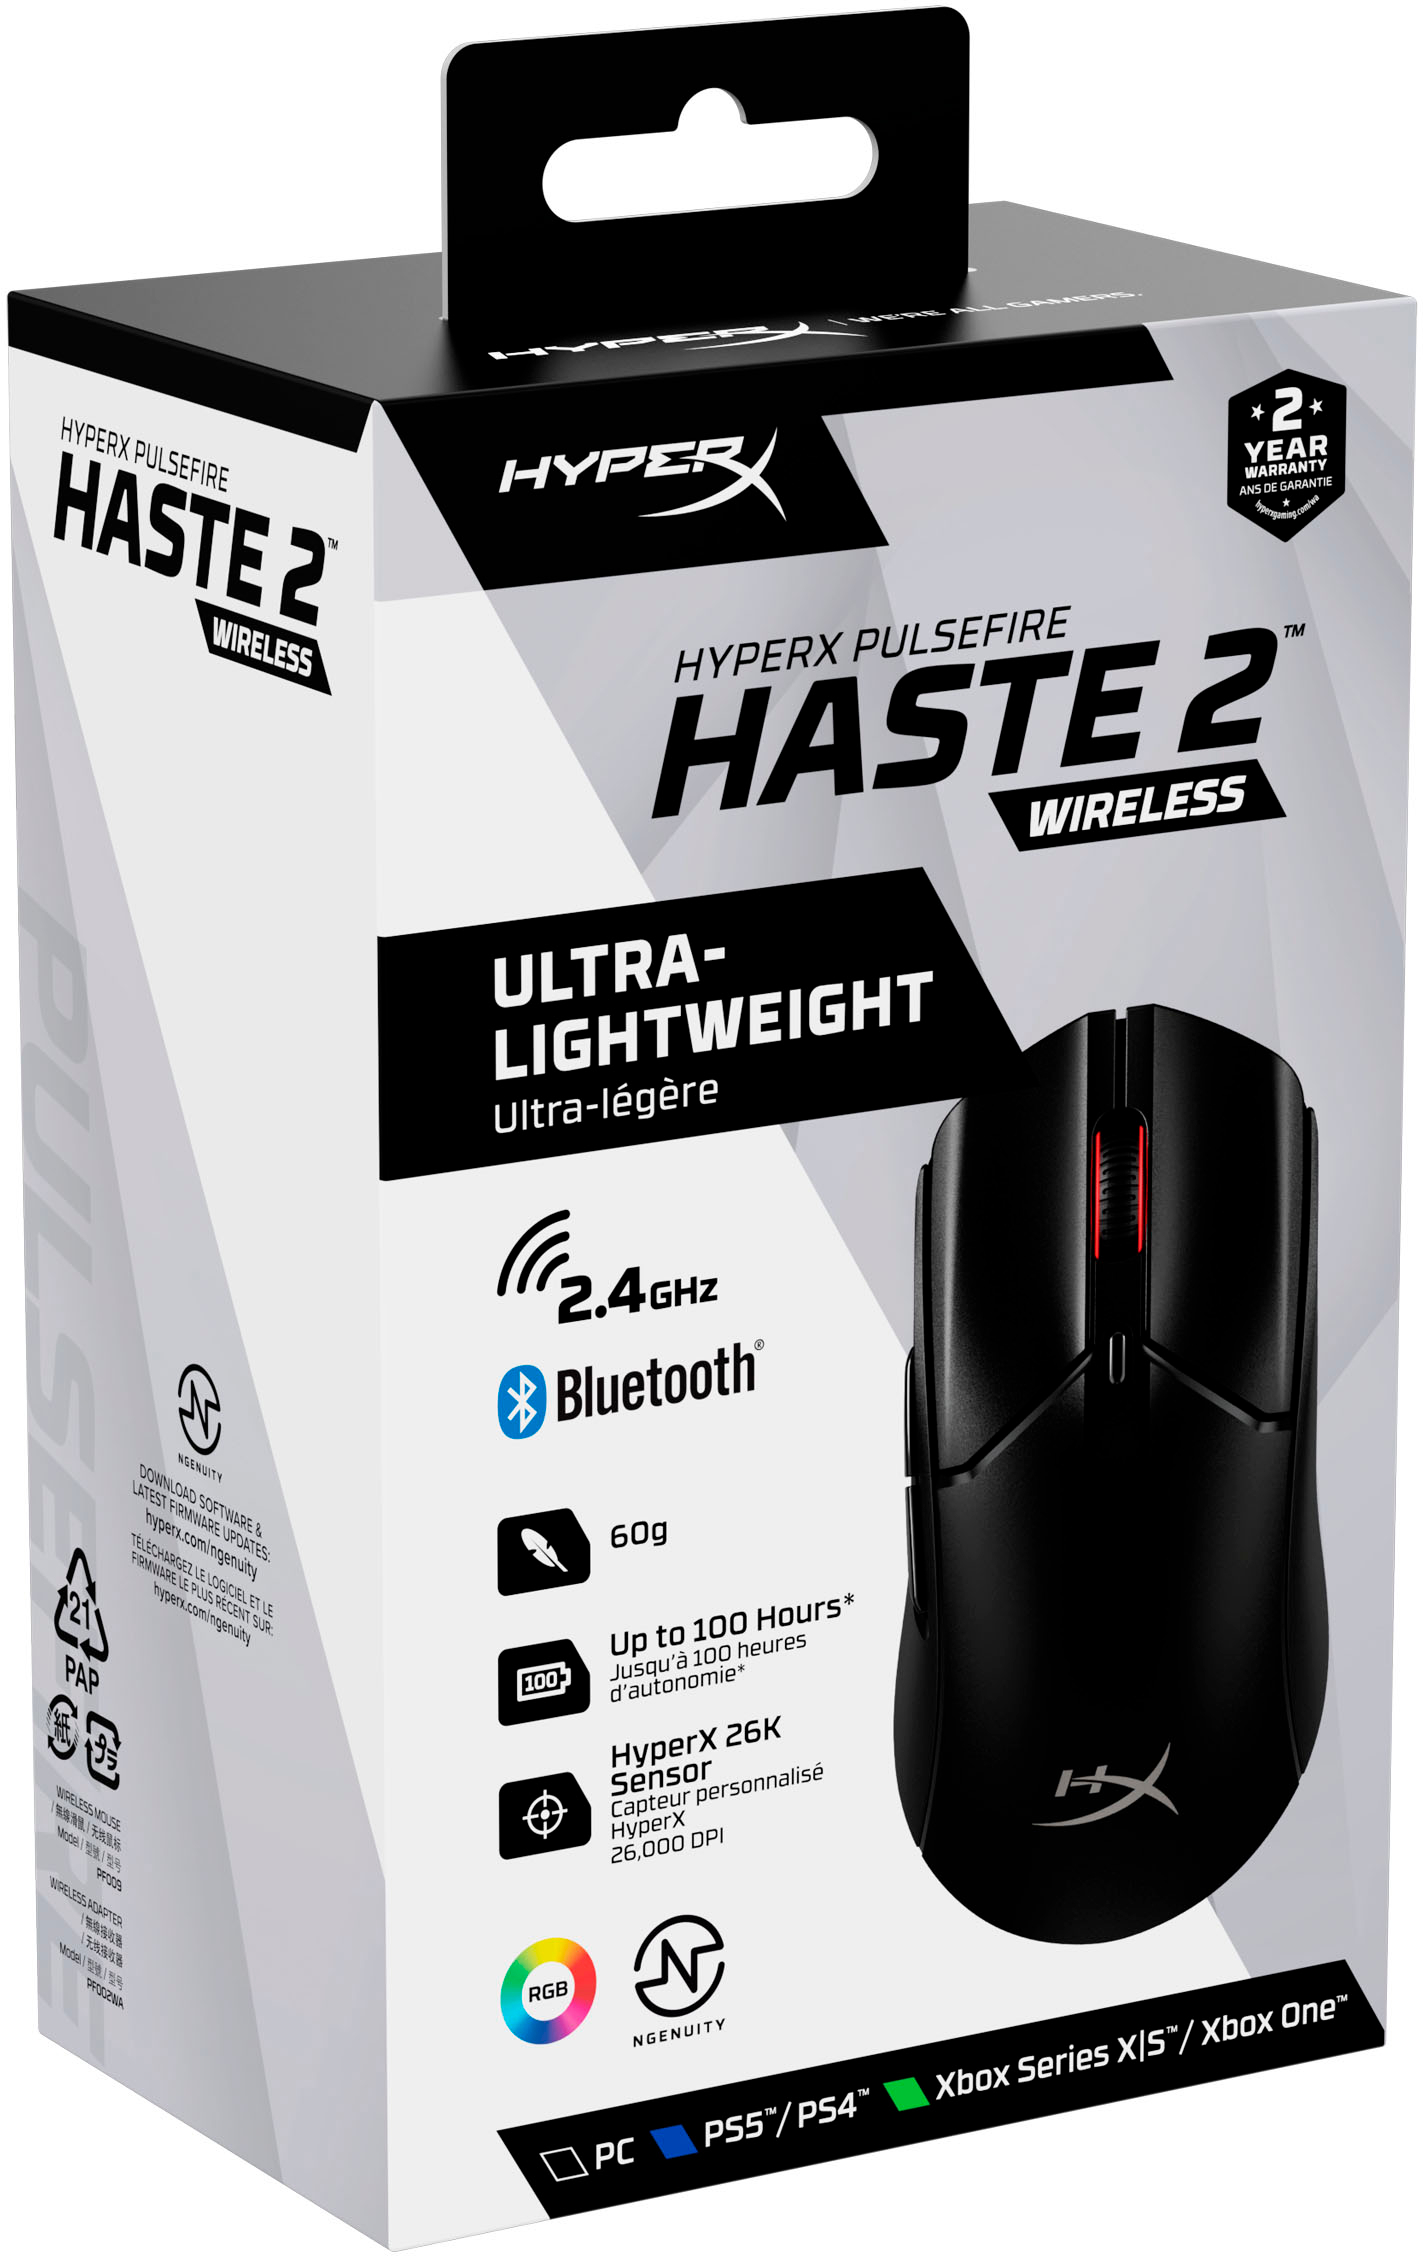 HyperX Pulsefire Haste Wireless and Pulsefire Mat review: A match